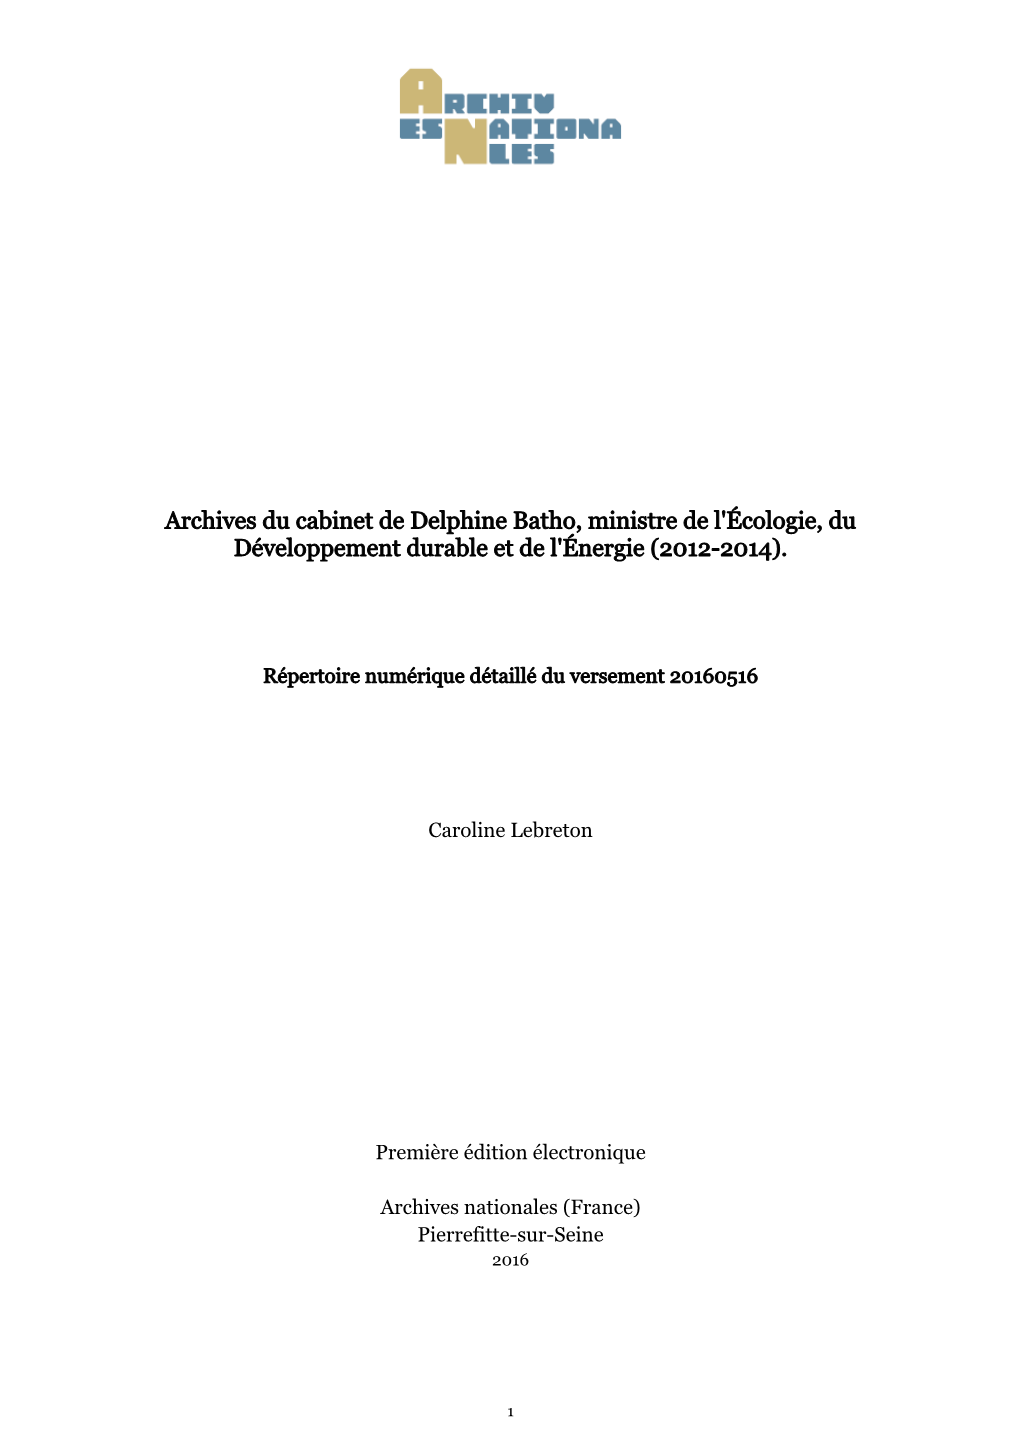 Archives Du Cabinet De Delphine Batho, Ministre De L'écologie, Du Développement Durable Et De L'énergie (2012-2014)